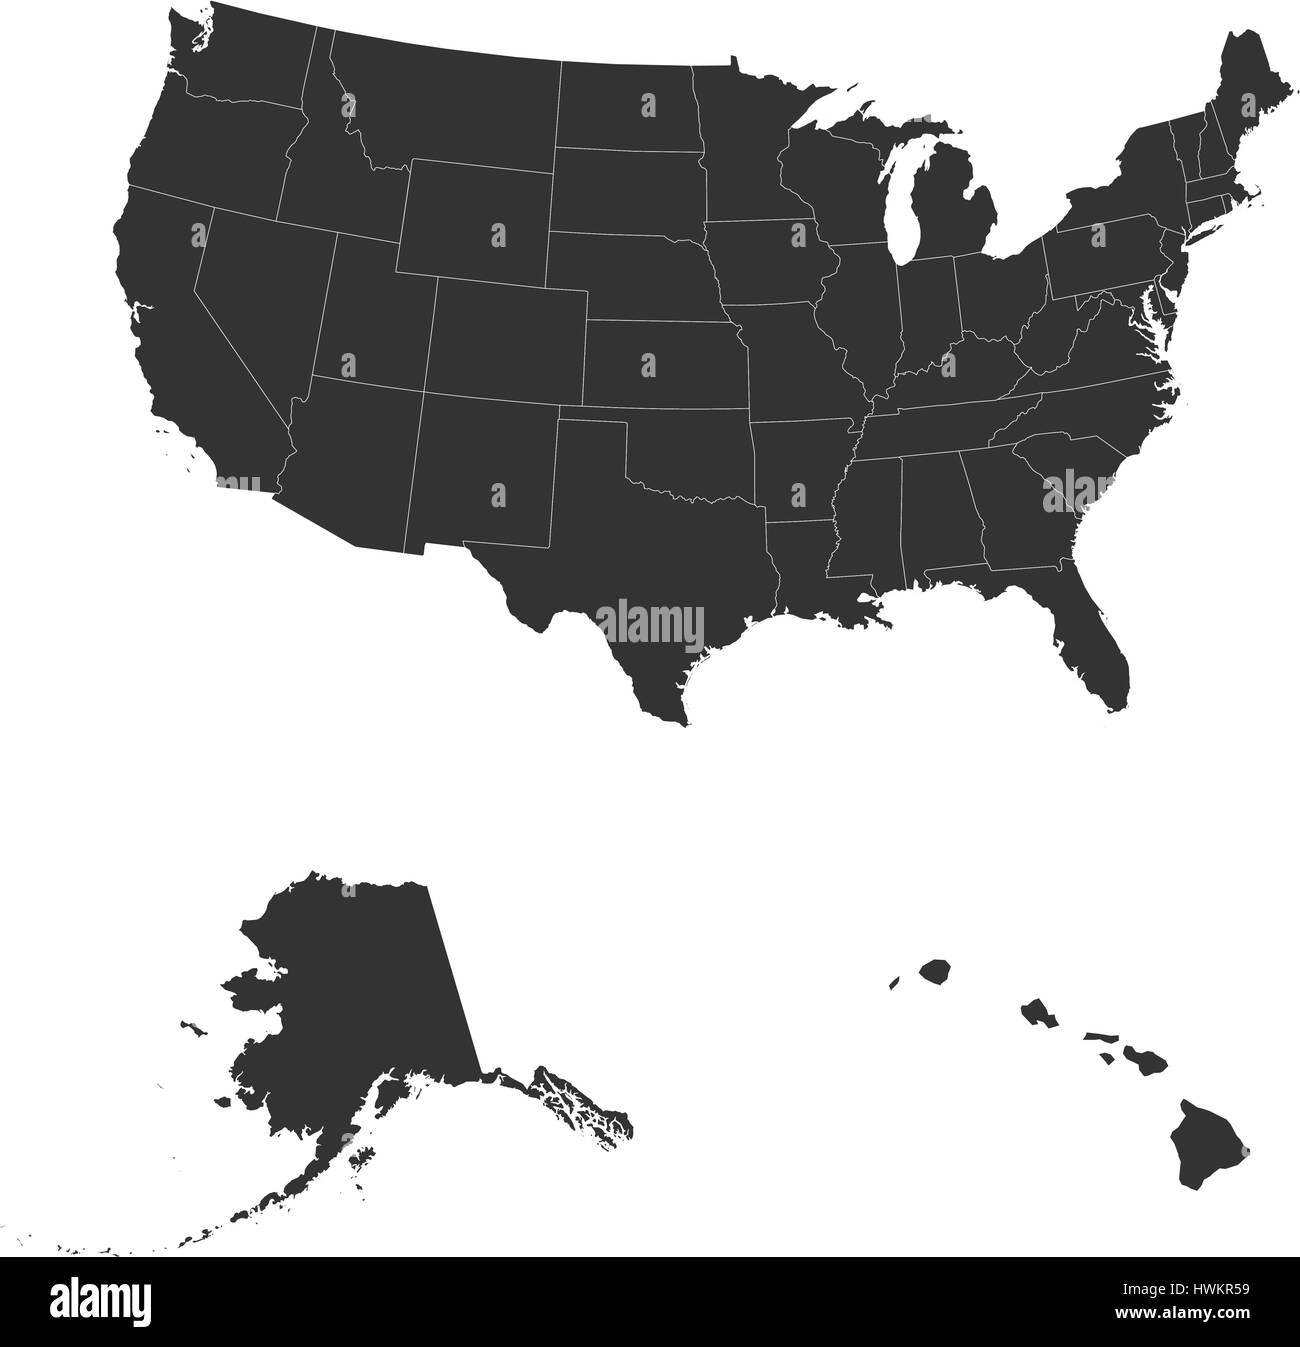 El mapa detallado de los EE.UU., incluyendo Alaska y Hawai. Los Estados Unidos de América Ilustración del Vector